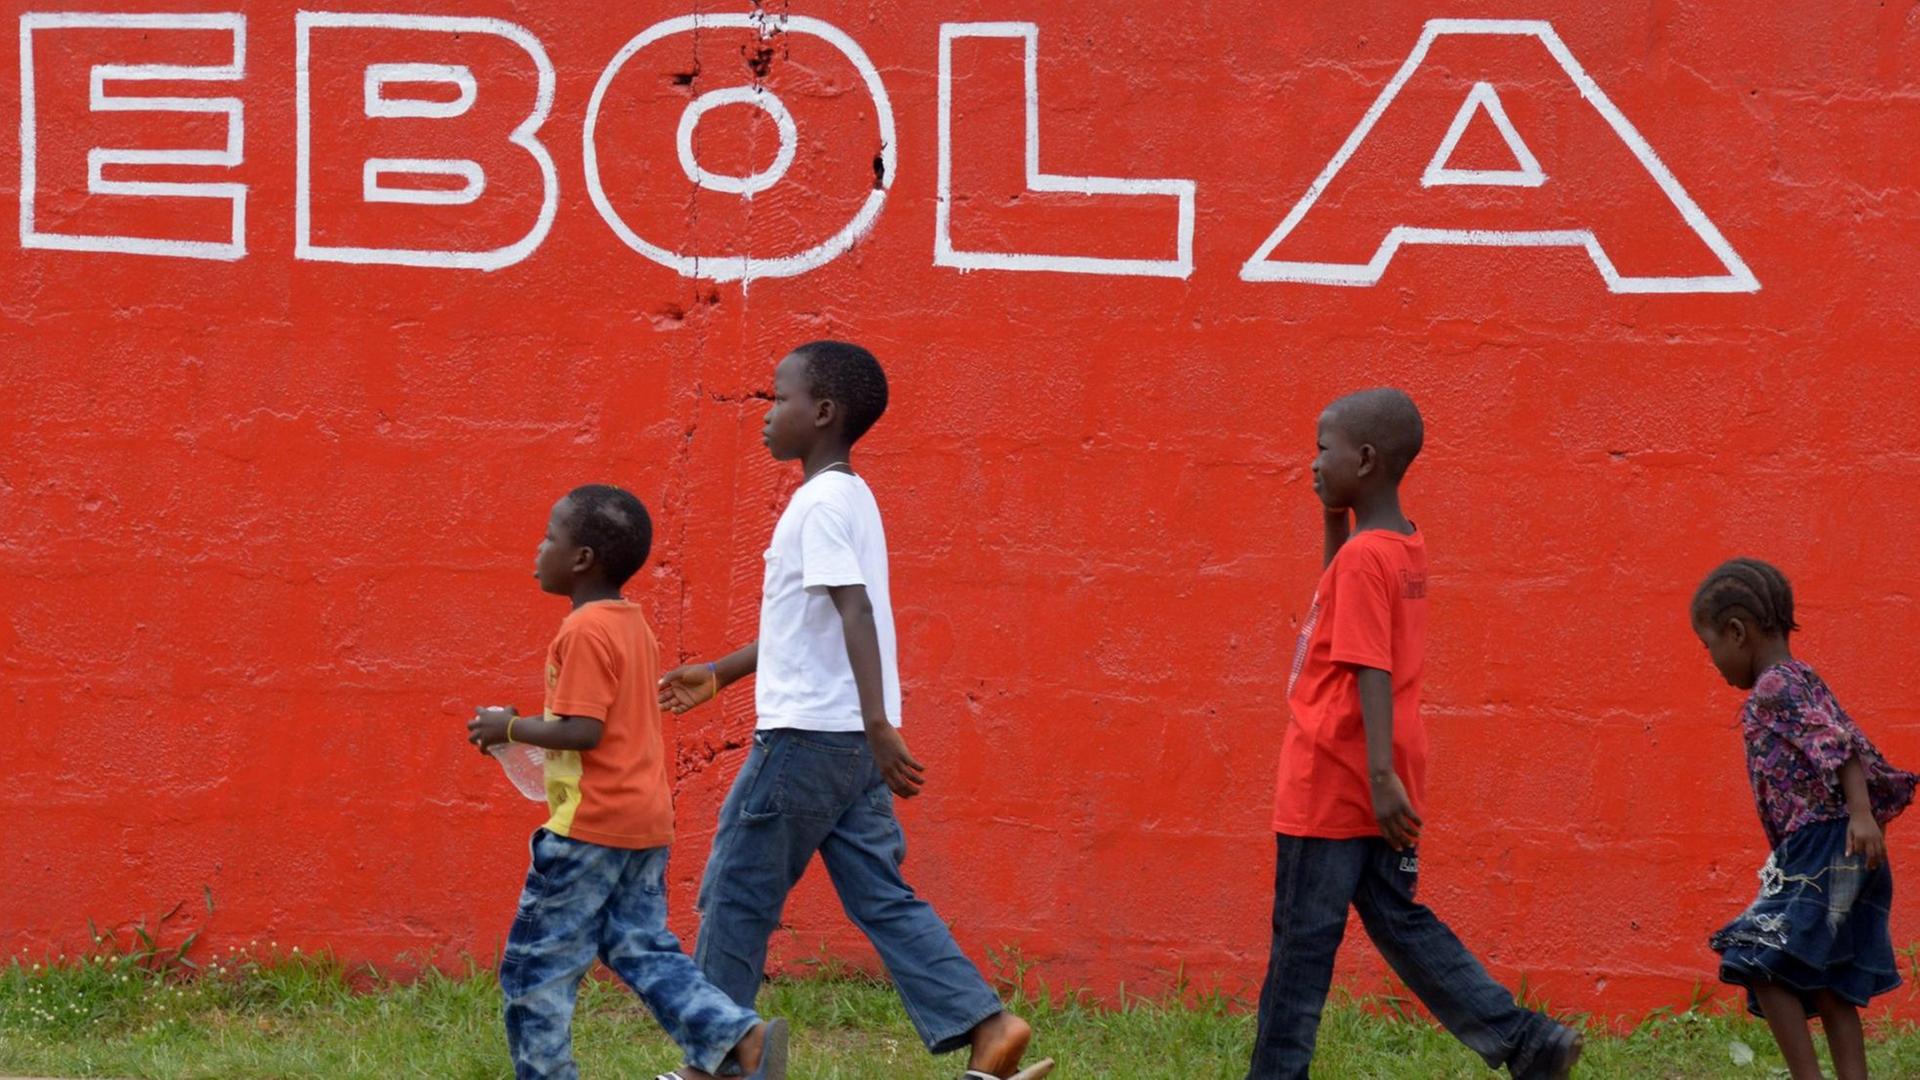 Vier Kinder im Schulkindalter laufen vor einer knallroten Mauer mit der weißen Aufschrift "Ebola".